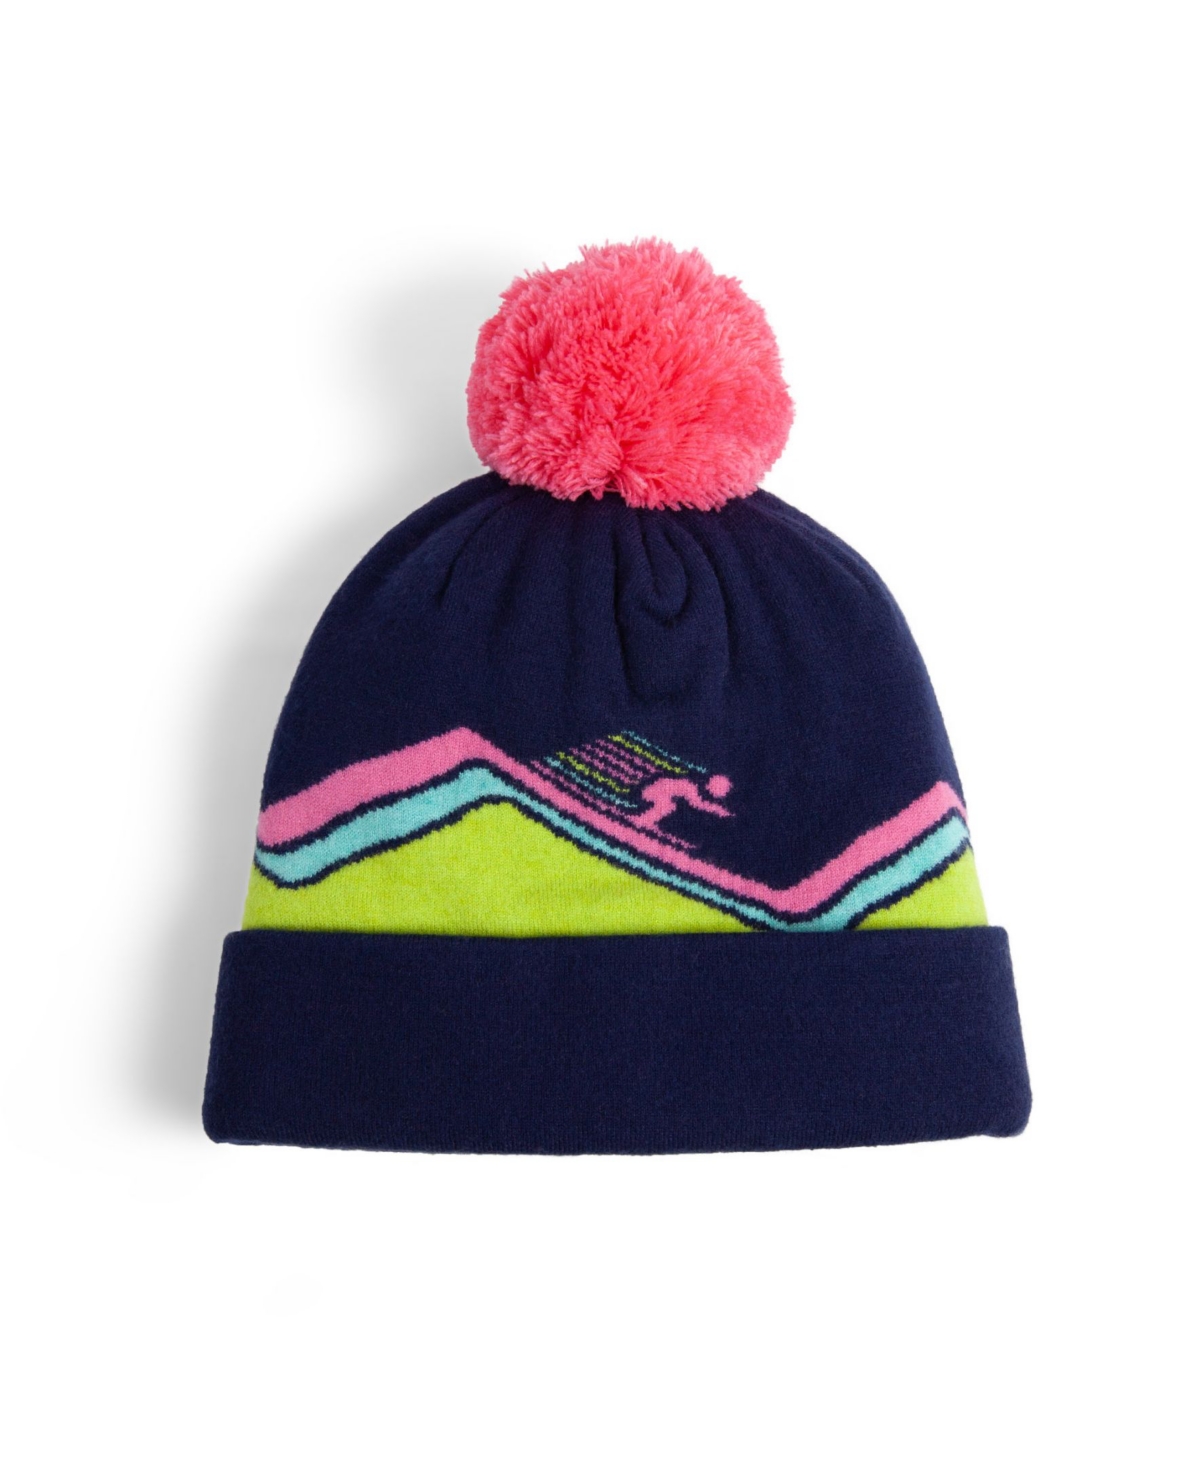 Women's Mountain Lady Winter Hats - Blue, Pink